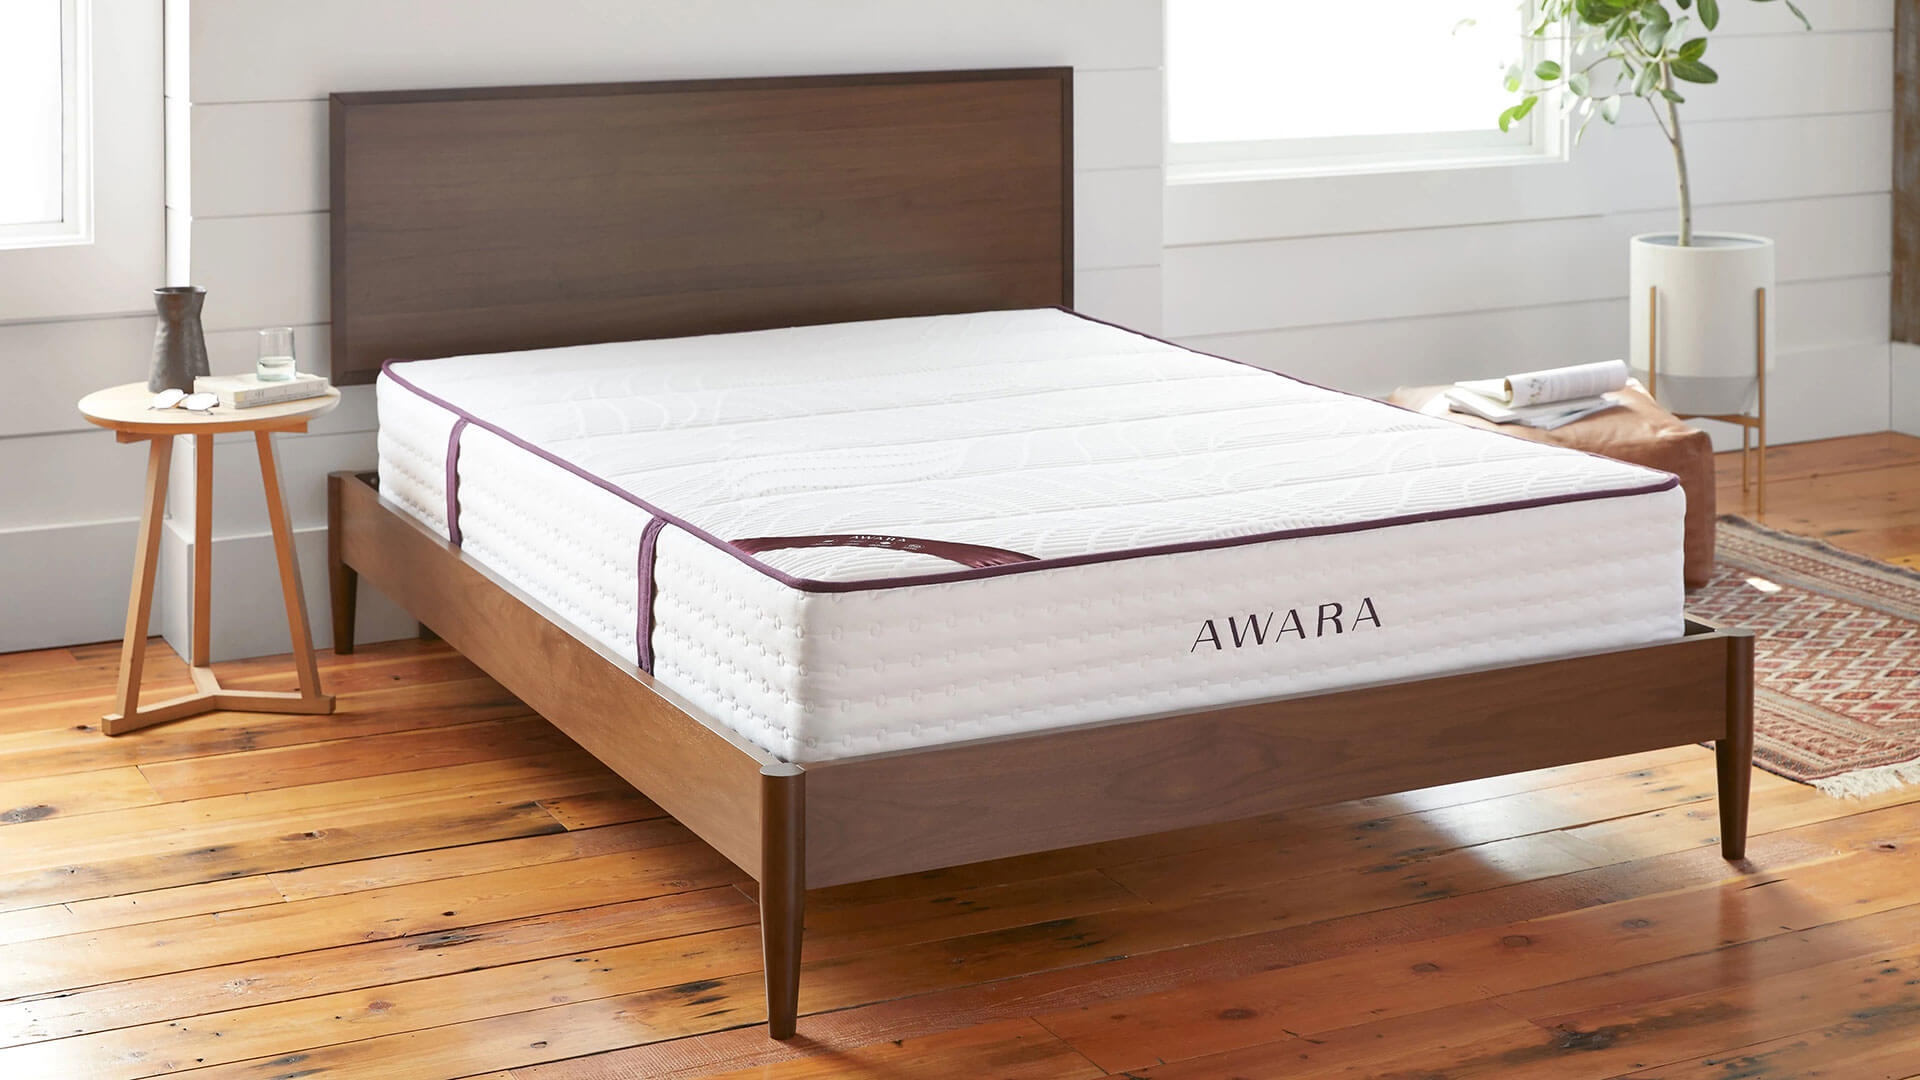 awara mattress on bed